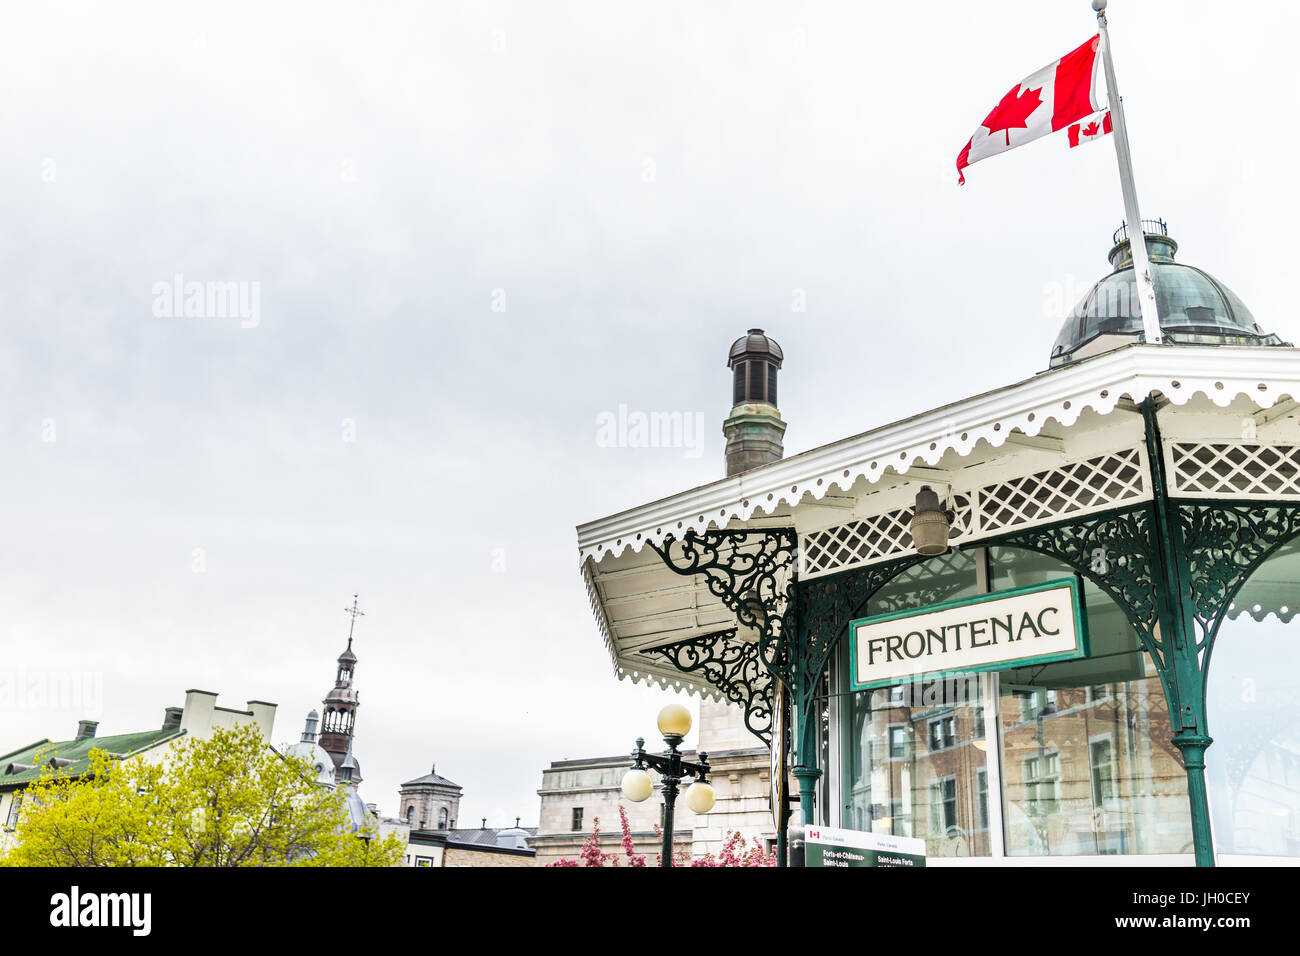 La ville de Québec, Canada - 29 mai 2017 : vue sur la vieille ville de Frontenac et signe avec le drapeau du bâtiment Banque D'Images